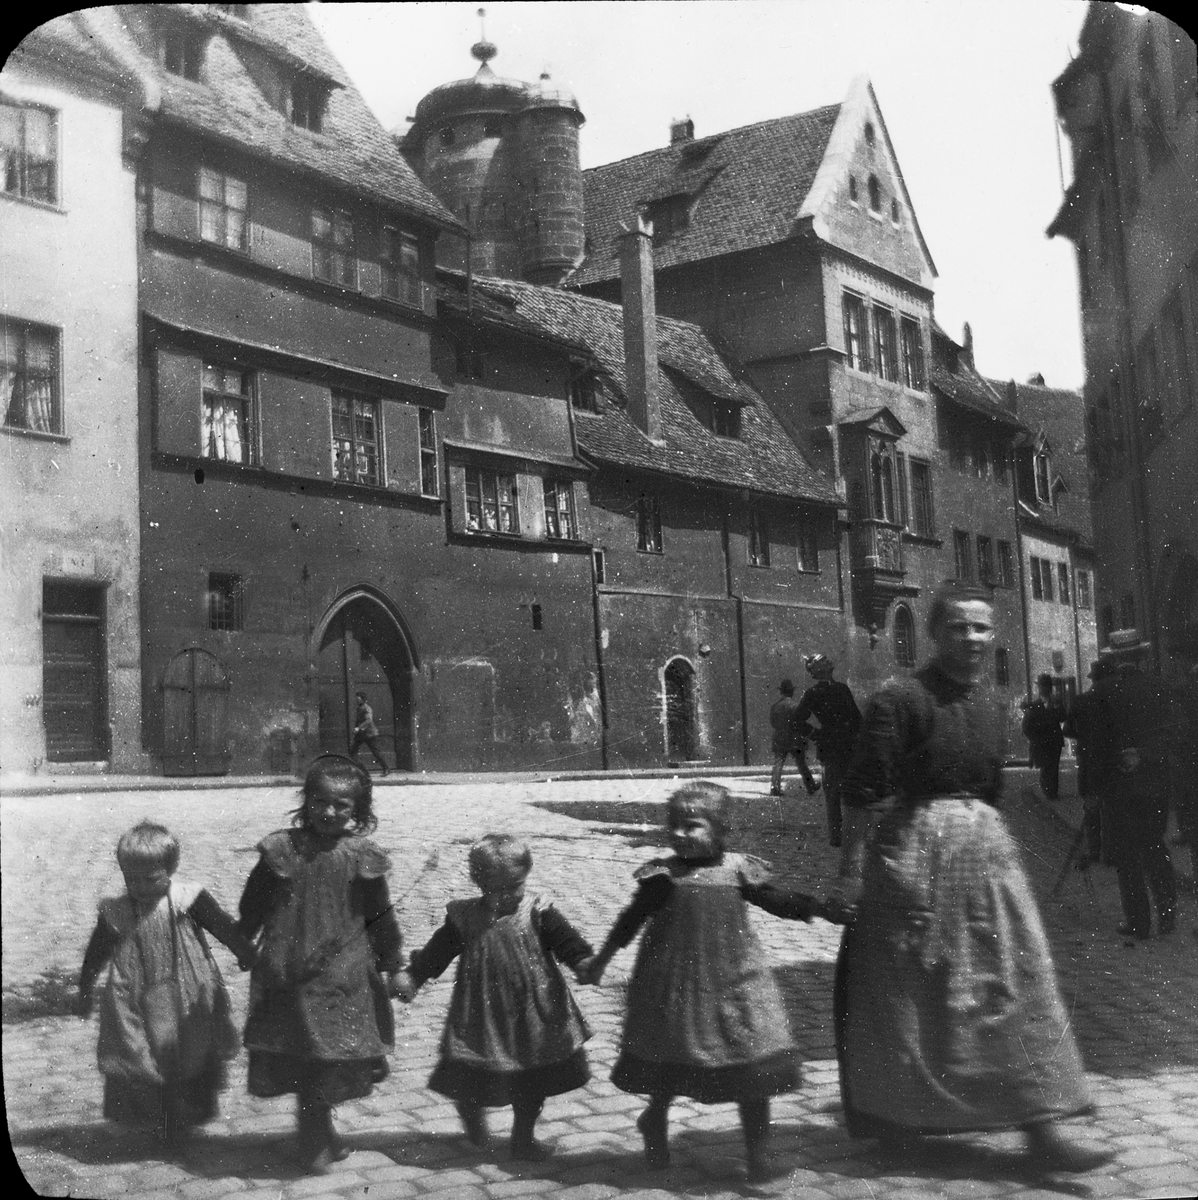 Skioptikonbild med motiv av kvinna med fyra små barn på gata i Nürnberg.
Bilden har förvarats i kartong märkt: Nürnberg VI. 1901